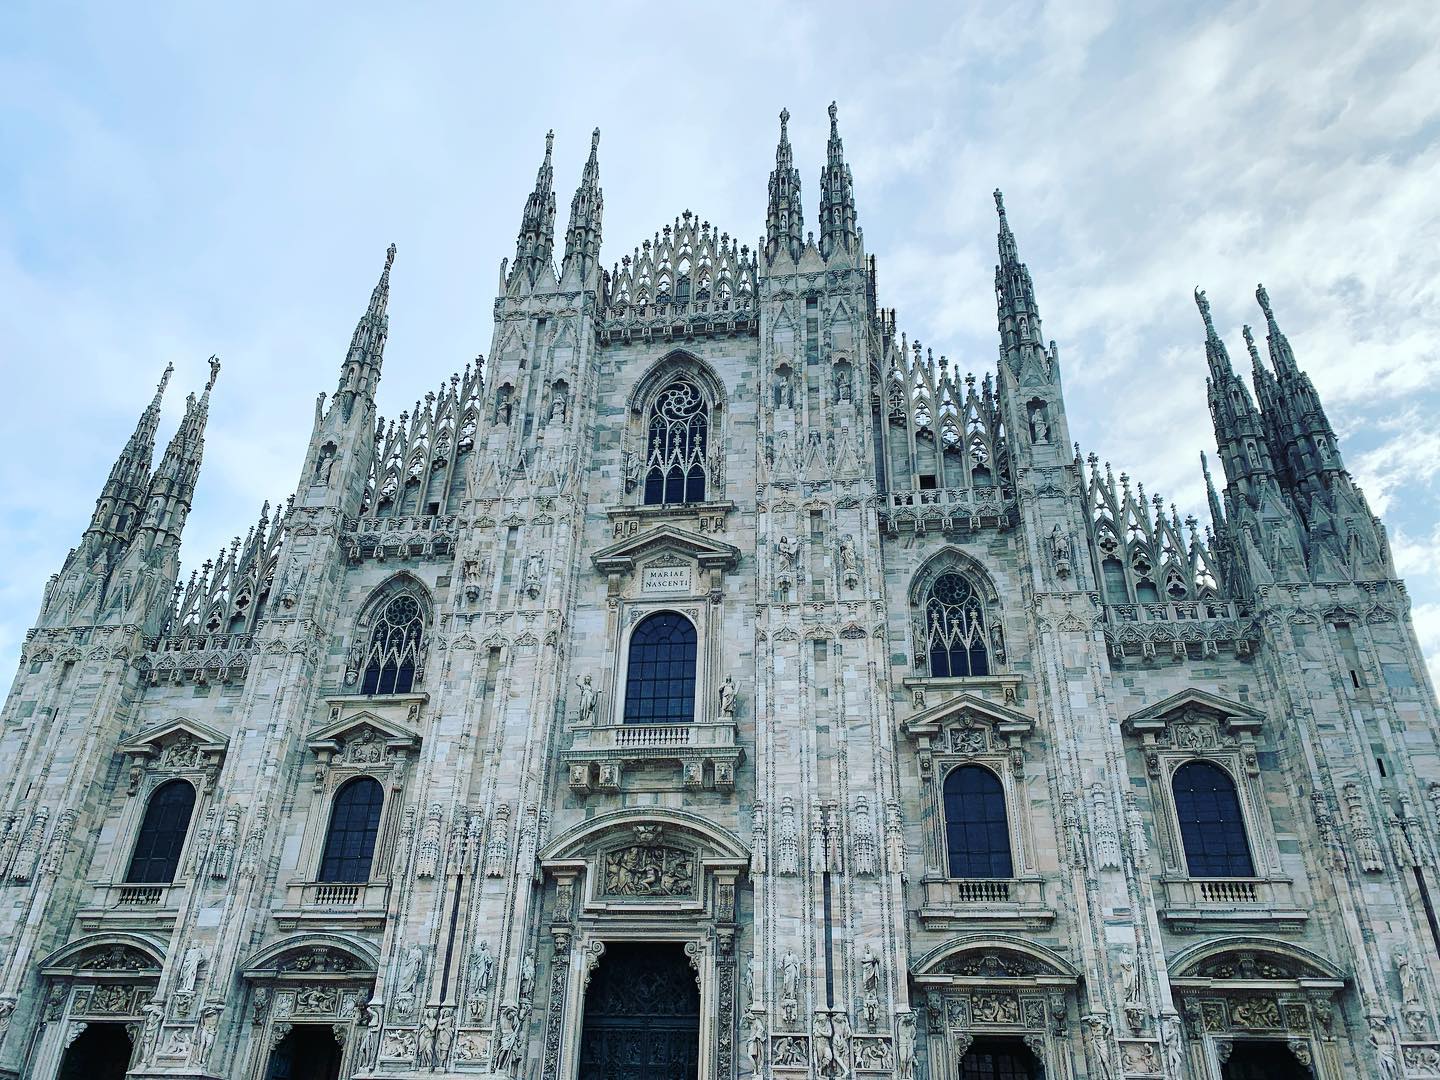 Morning Duomo 😎 #milan #duomo #nomadic